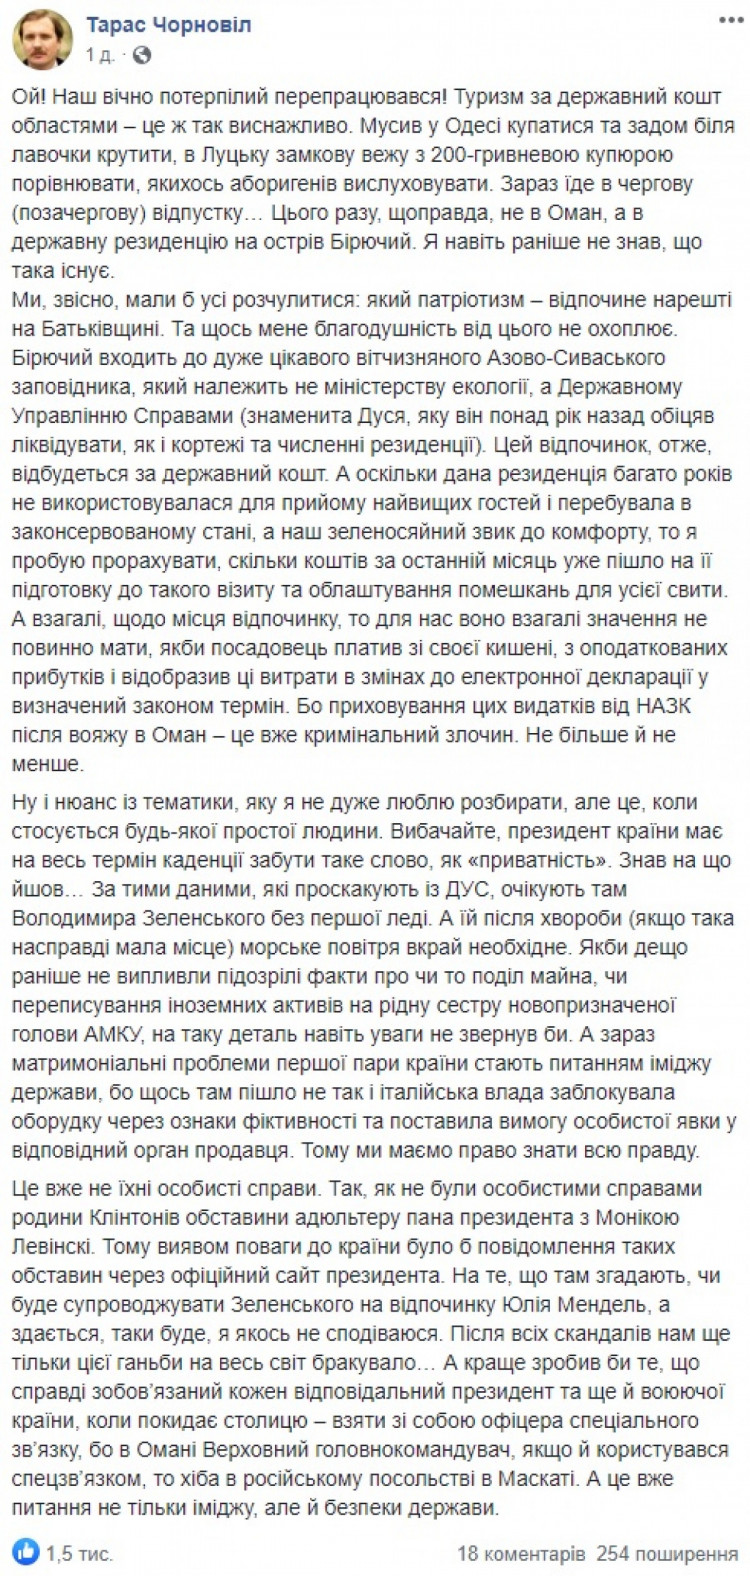 Скріншот поста Тараса Чорновола про відпочинок Зеленського 